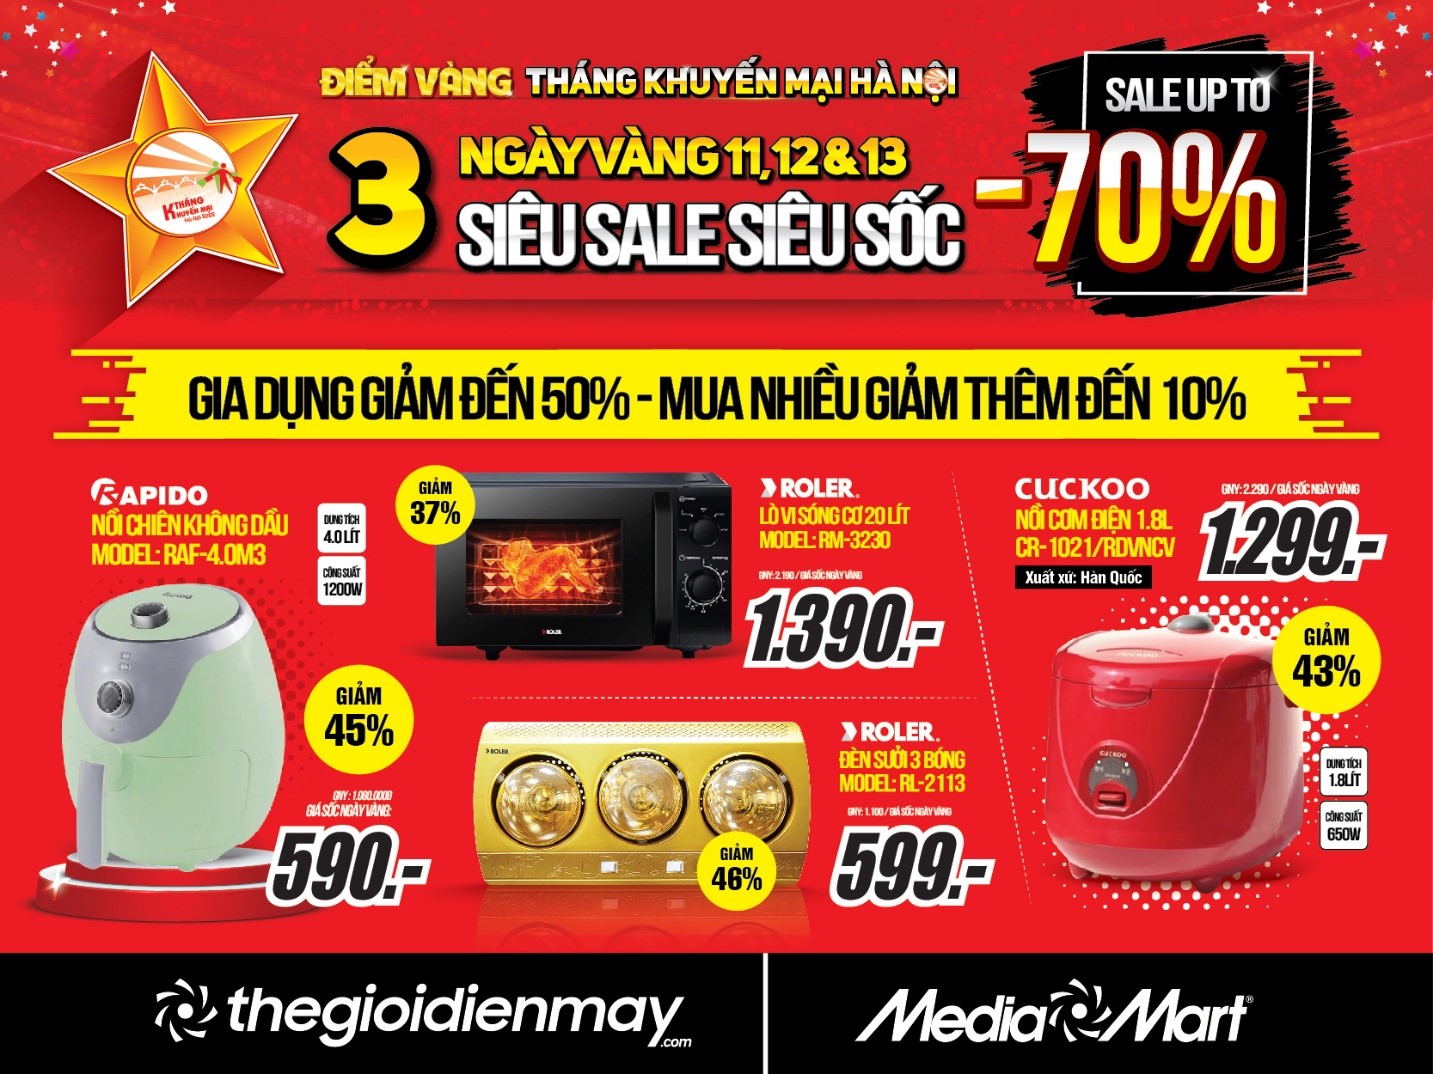 mediamart 3 days sales 4